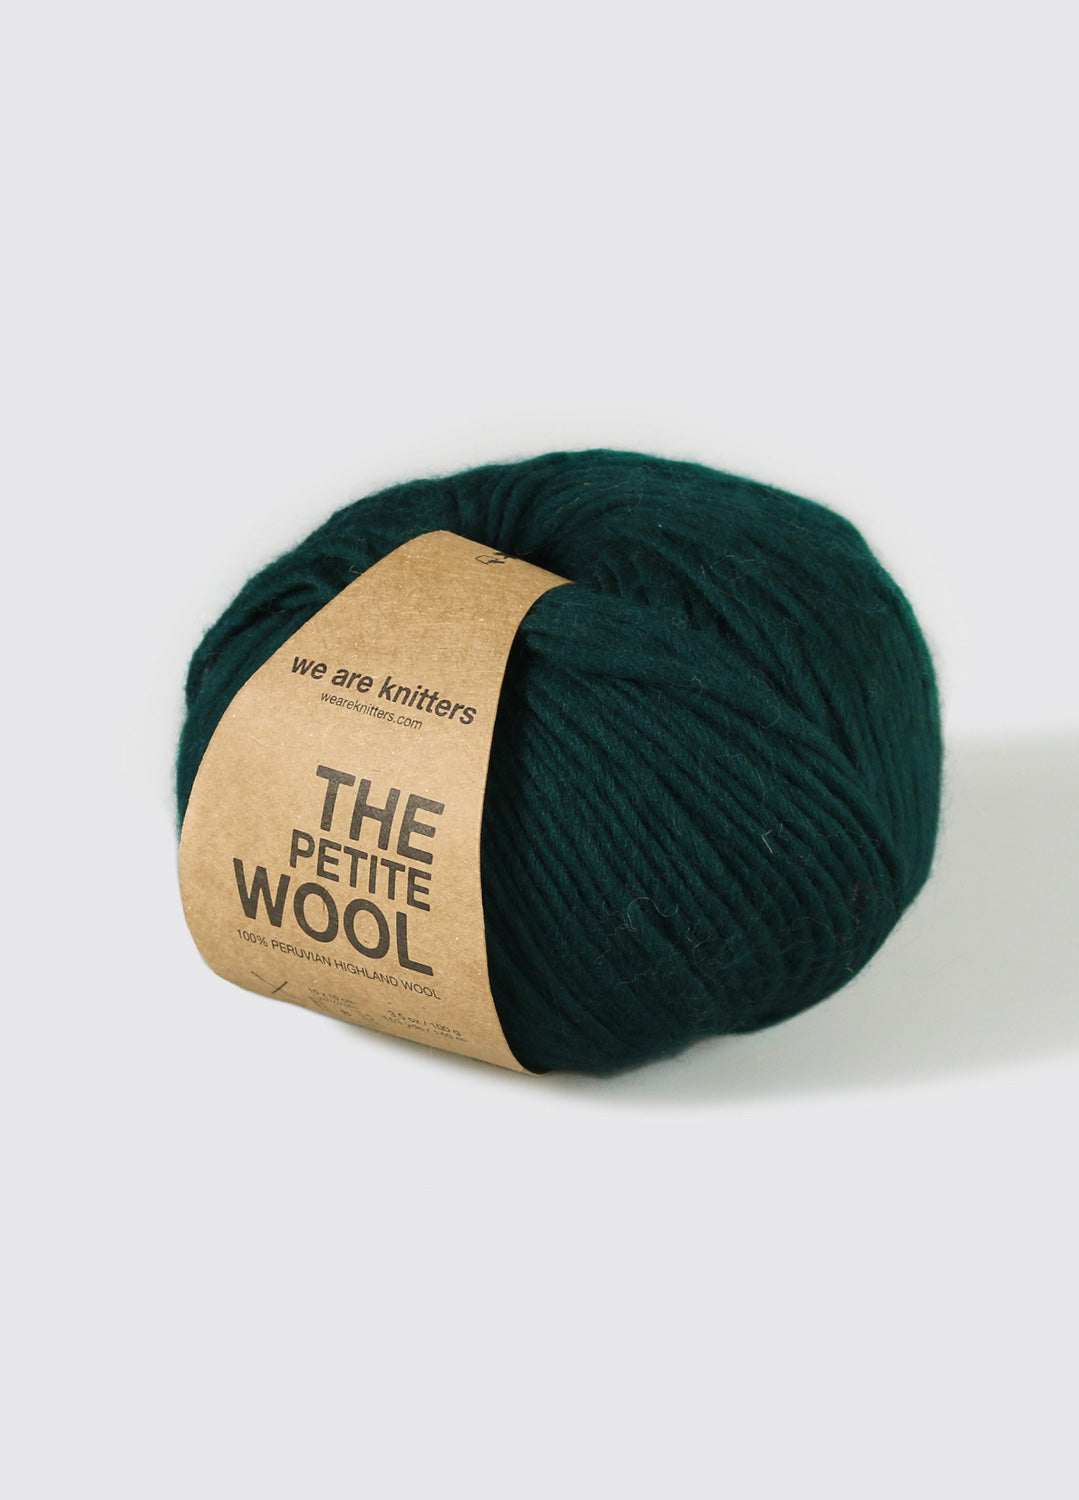 Wool – weareknitters